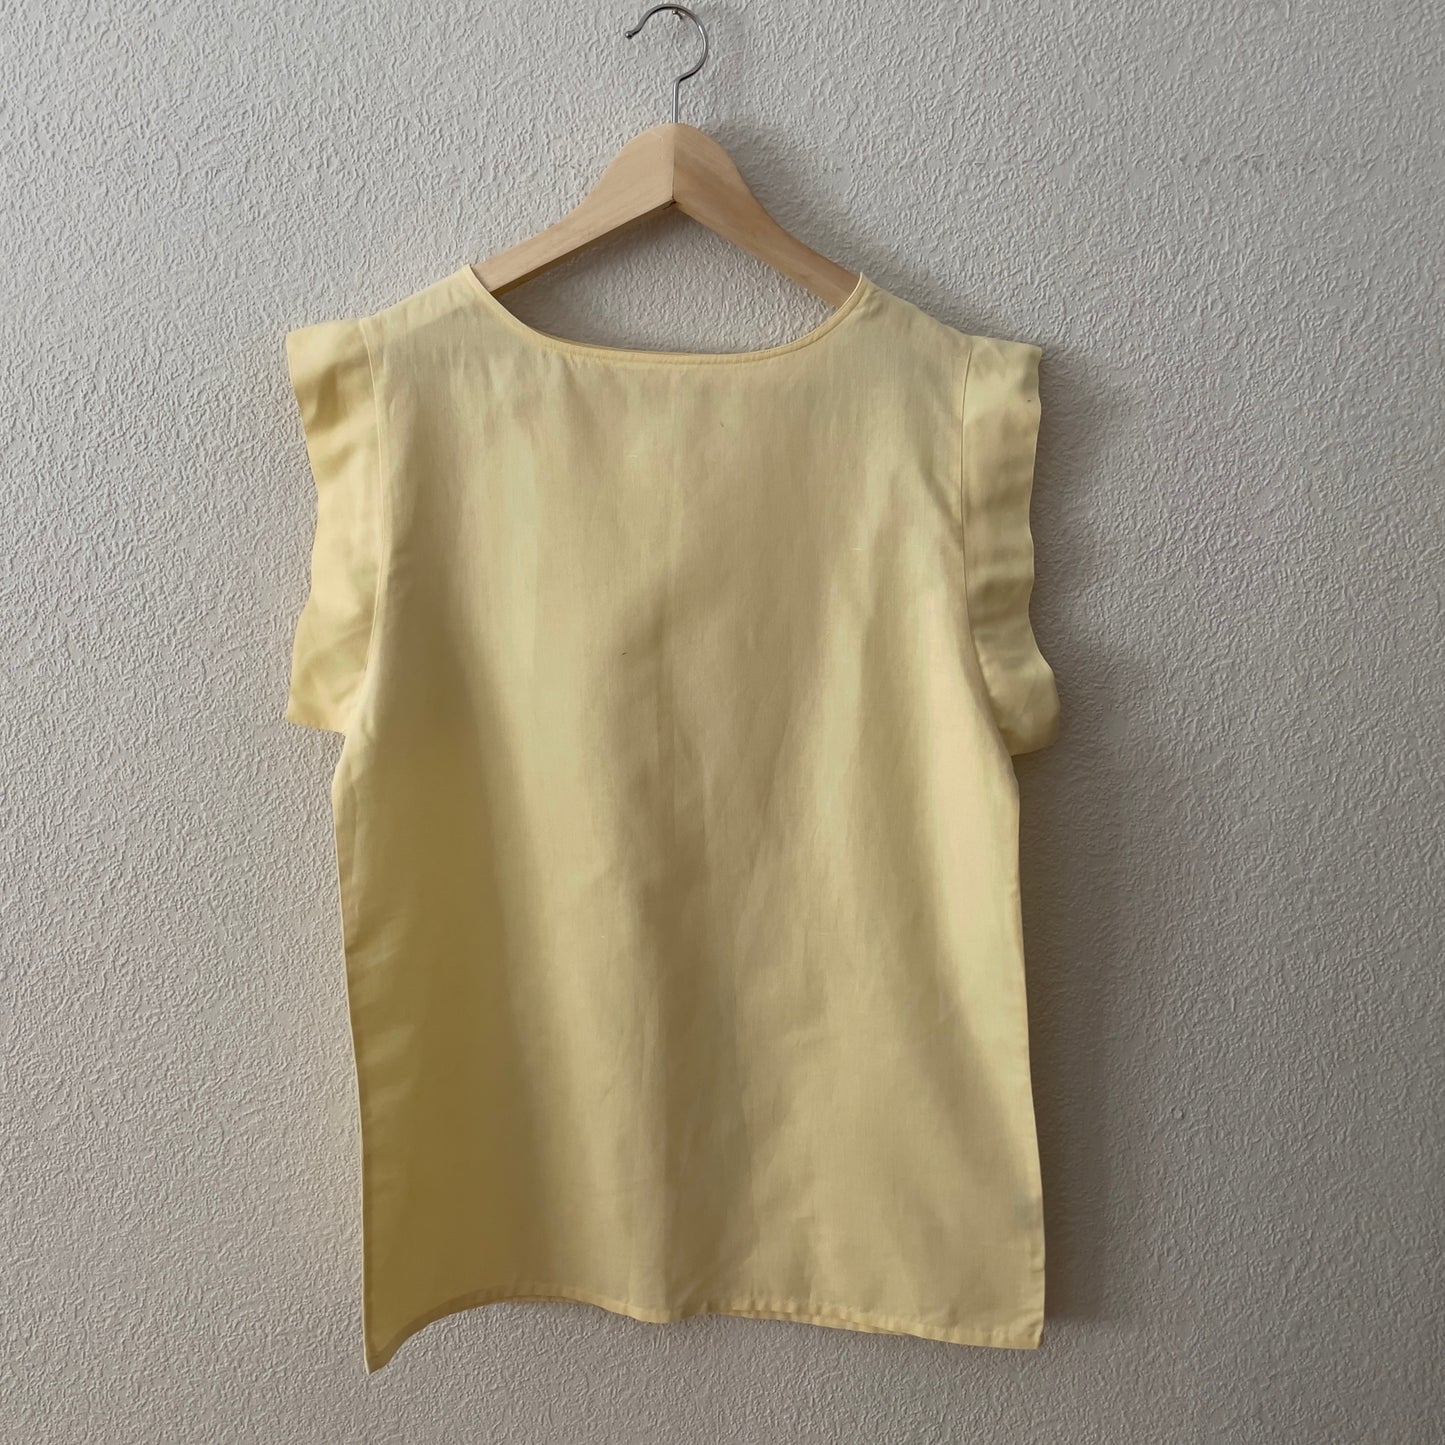 Vintage Soft Yellow Top - Cotton/Linen Blend